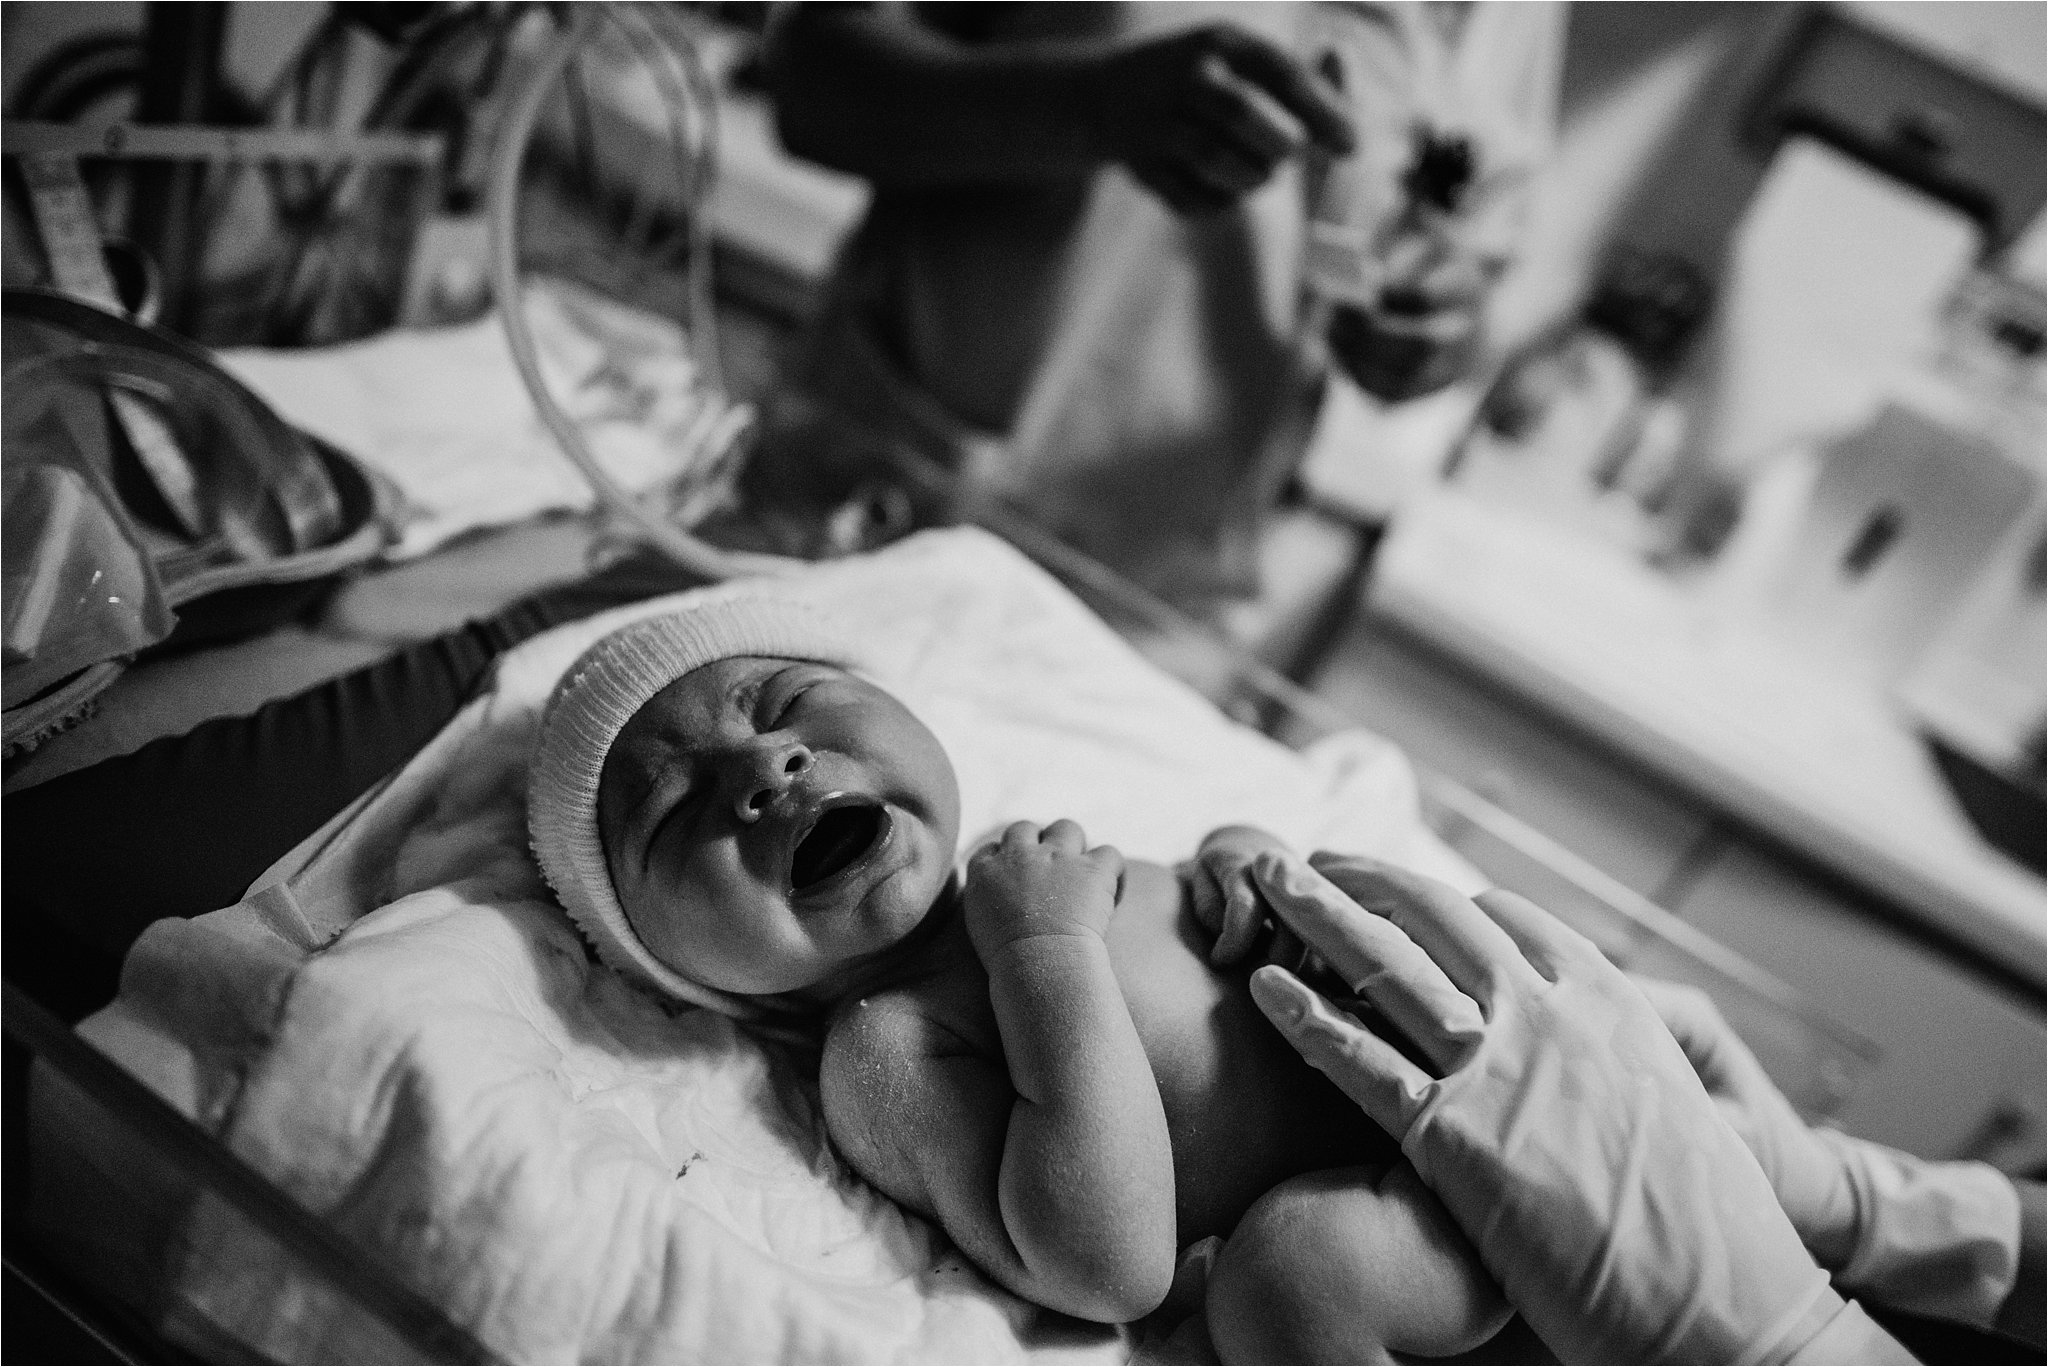 J + G + L accouchement REPORTAGE PHOTO bébé bebe naissance accouchement |  PHOTOGRAPHE naissance accouchement PARIS  | FREYIA photography | photographe | maternité accouchement à domicile dans  (Copy)